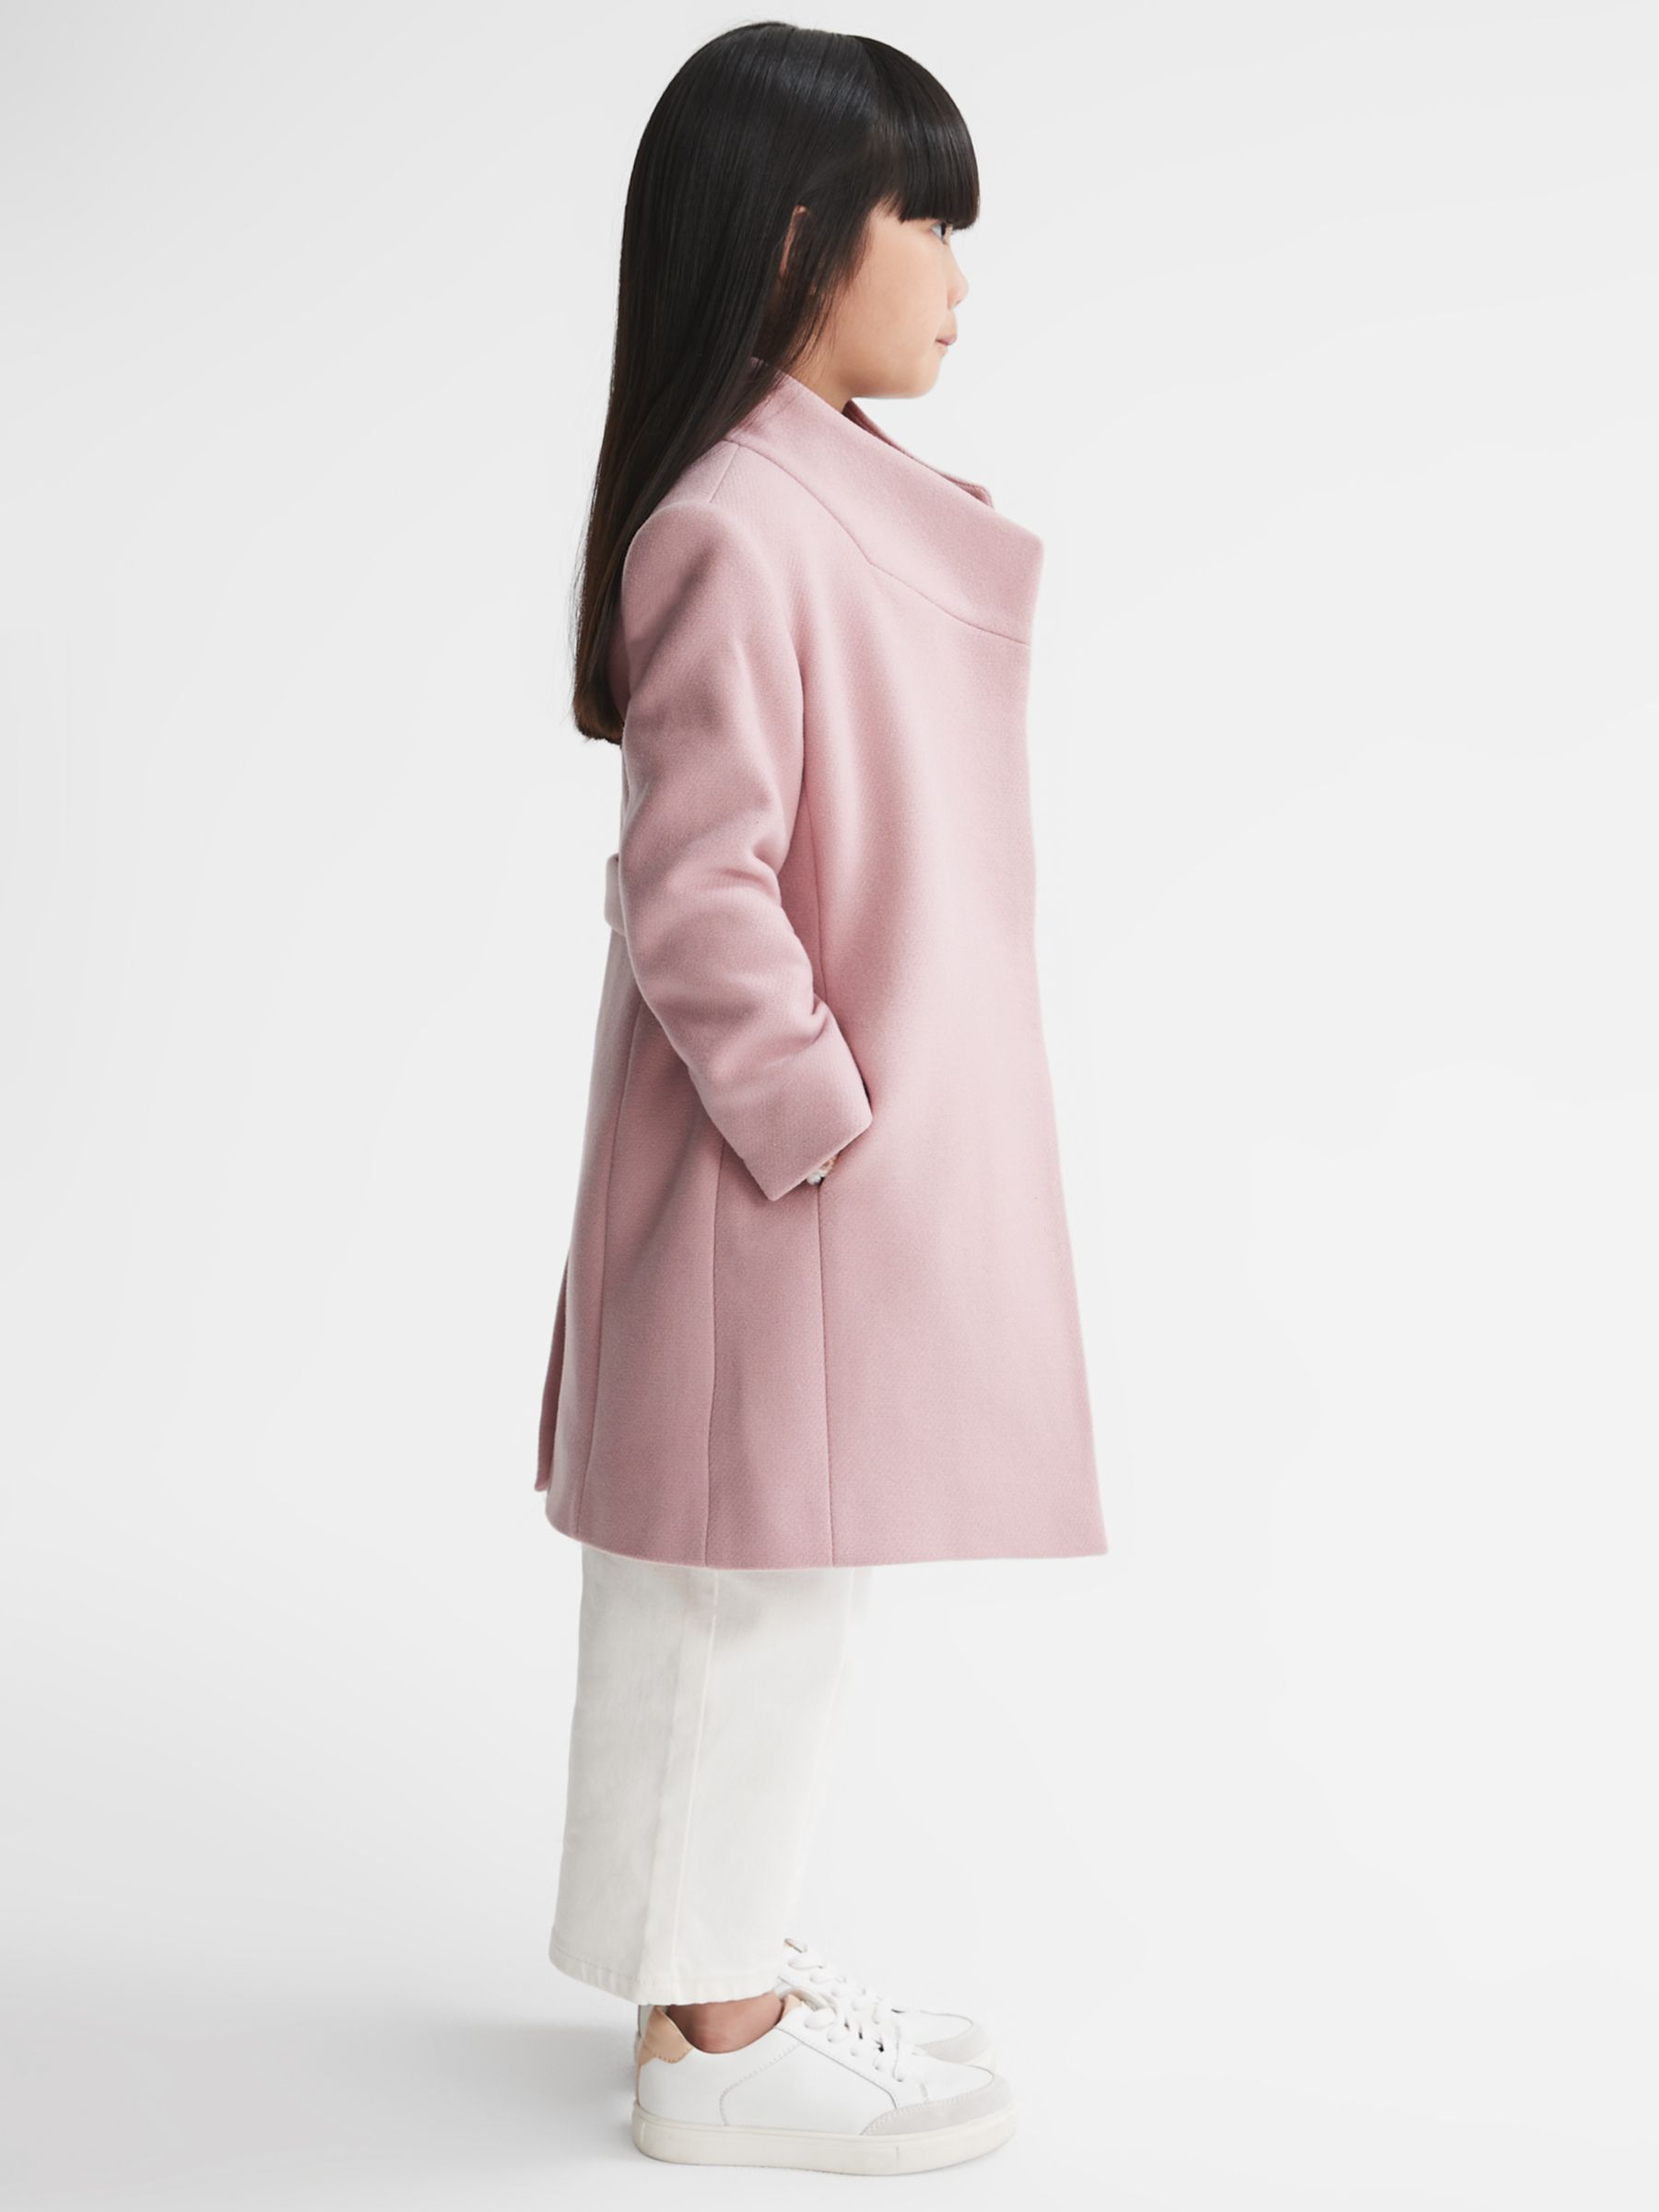 Buy Reiss Kids' Kia Wool Blend Coat, Pink Online at johnlewis.com